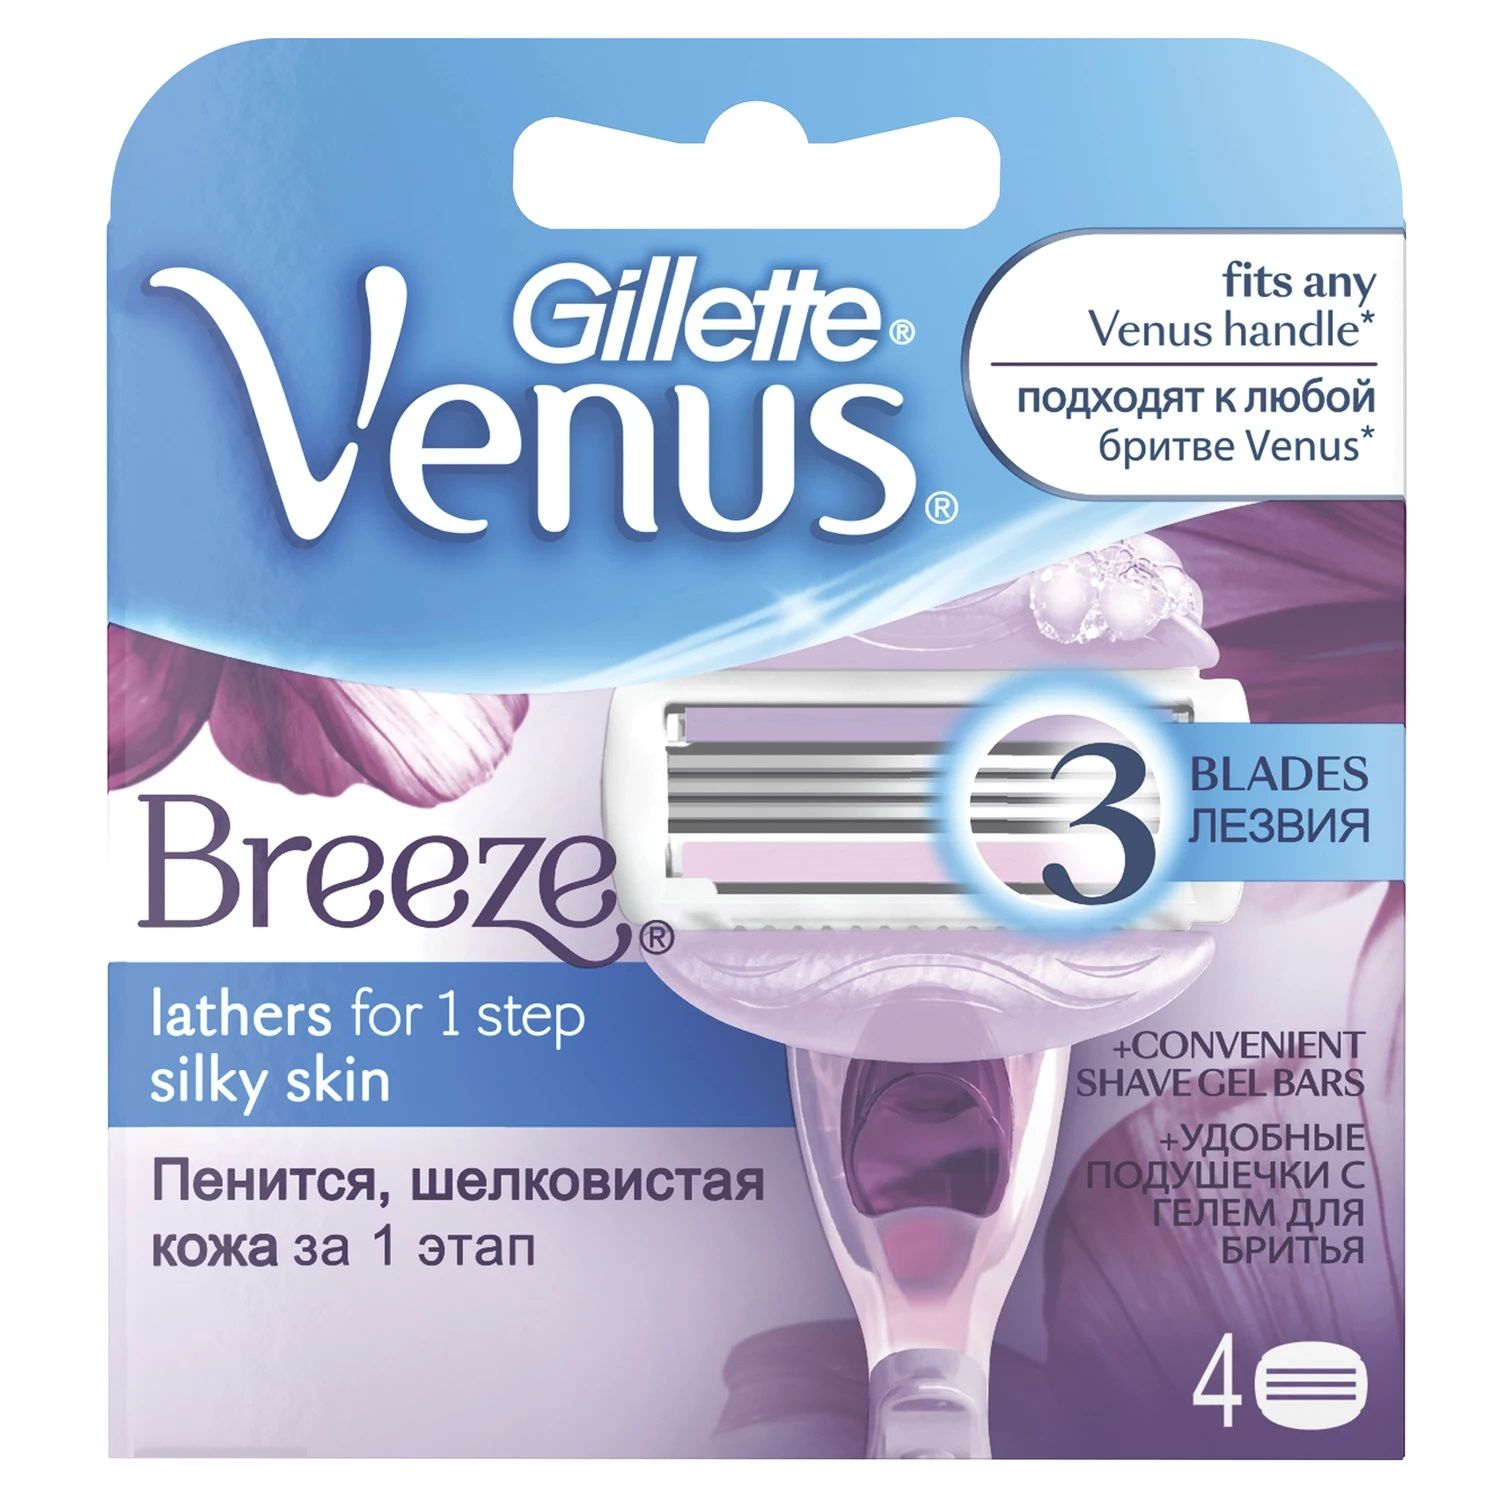 Сменные кассеты для станка Gillette Venus Breeze 4 шт станок для бритья gillette venus breeze 2 кассеты